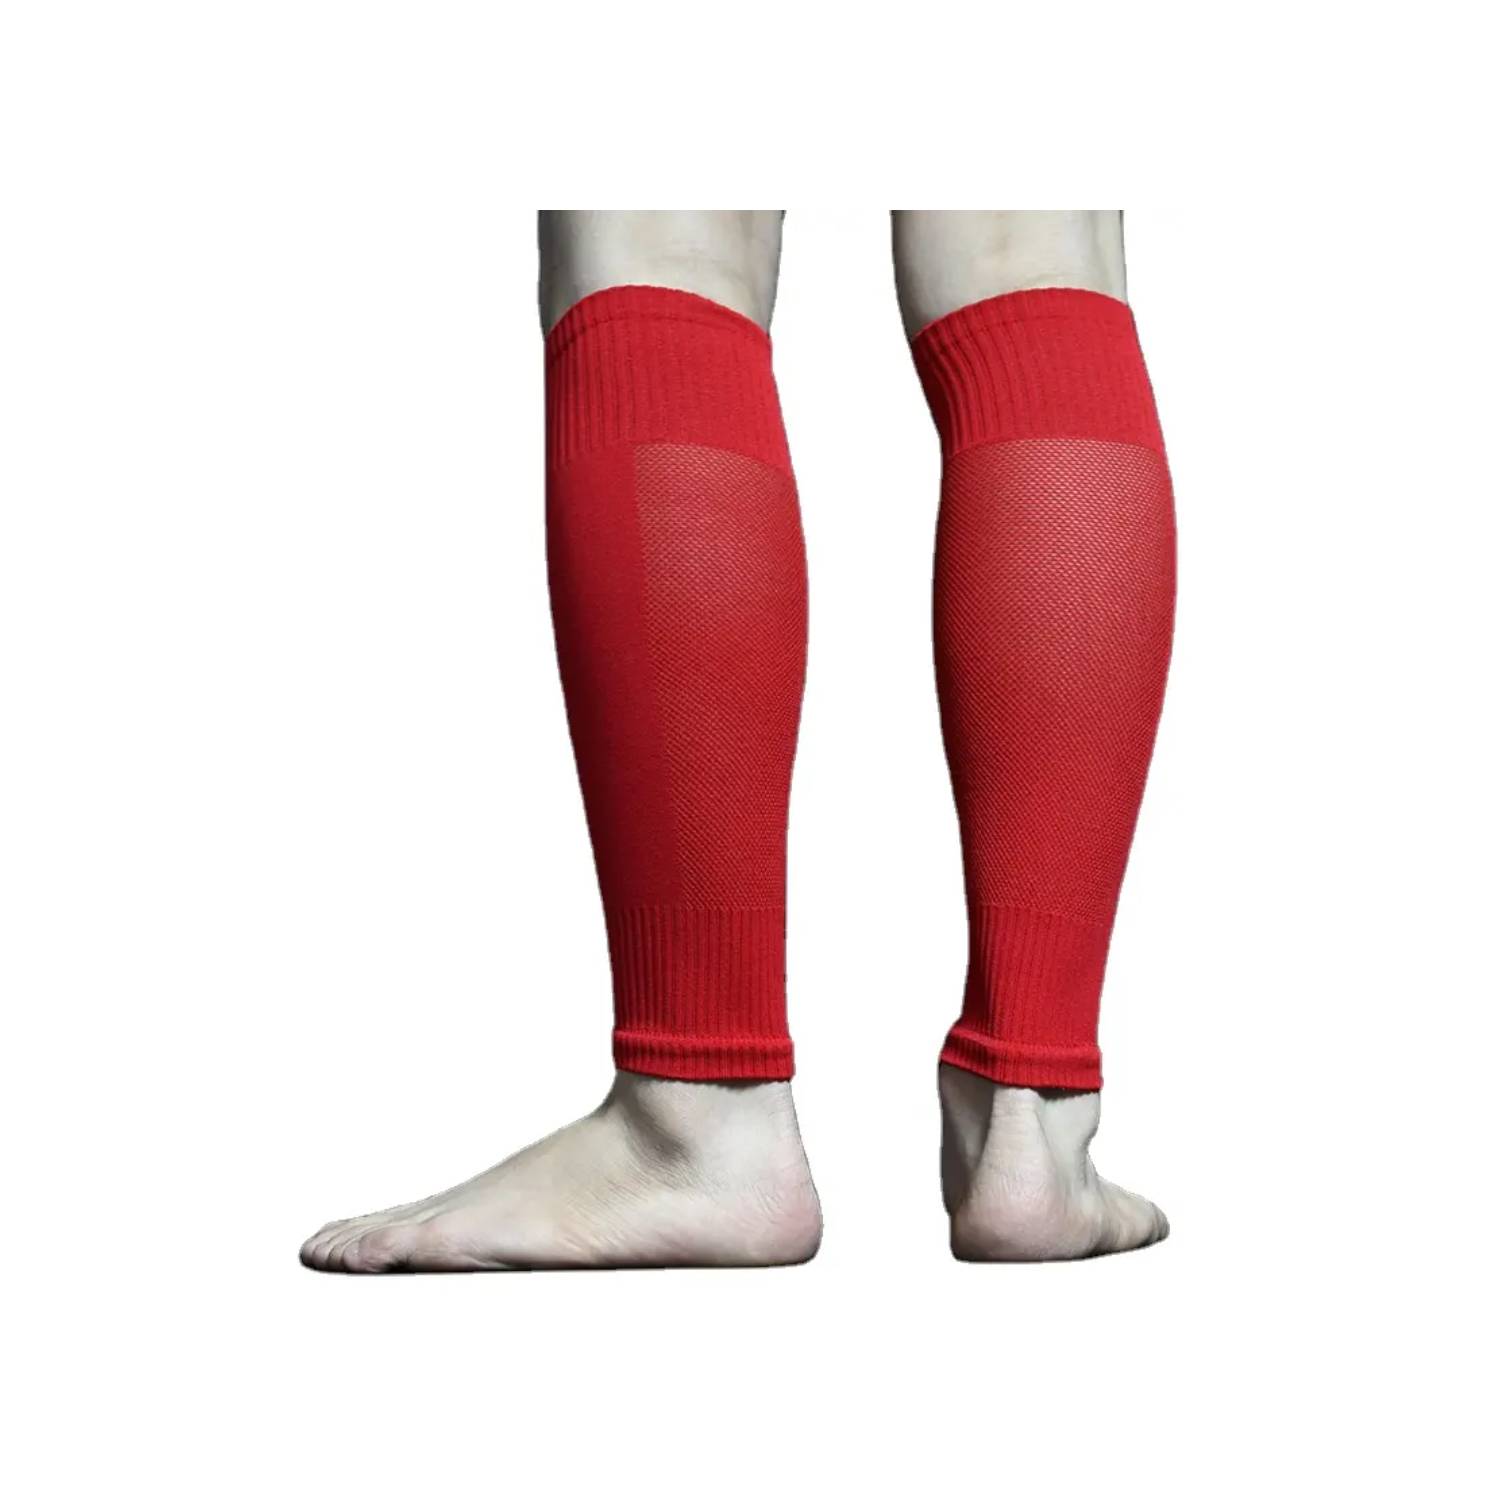 medias futbol sin pies – Compra medias futbol sin pies con envío gratis en  AliExpress version, medias futbol sin pie